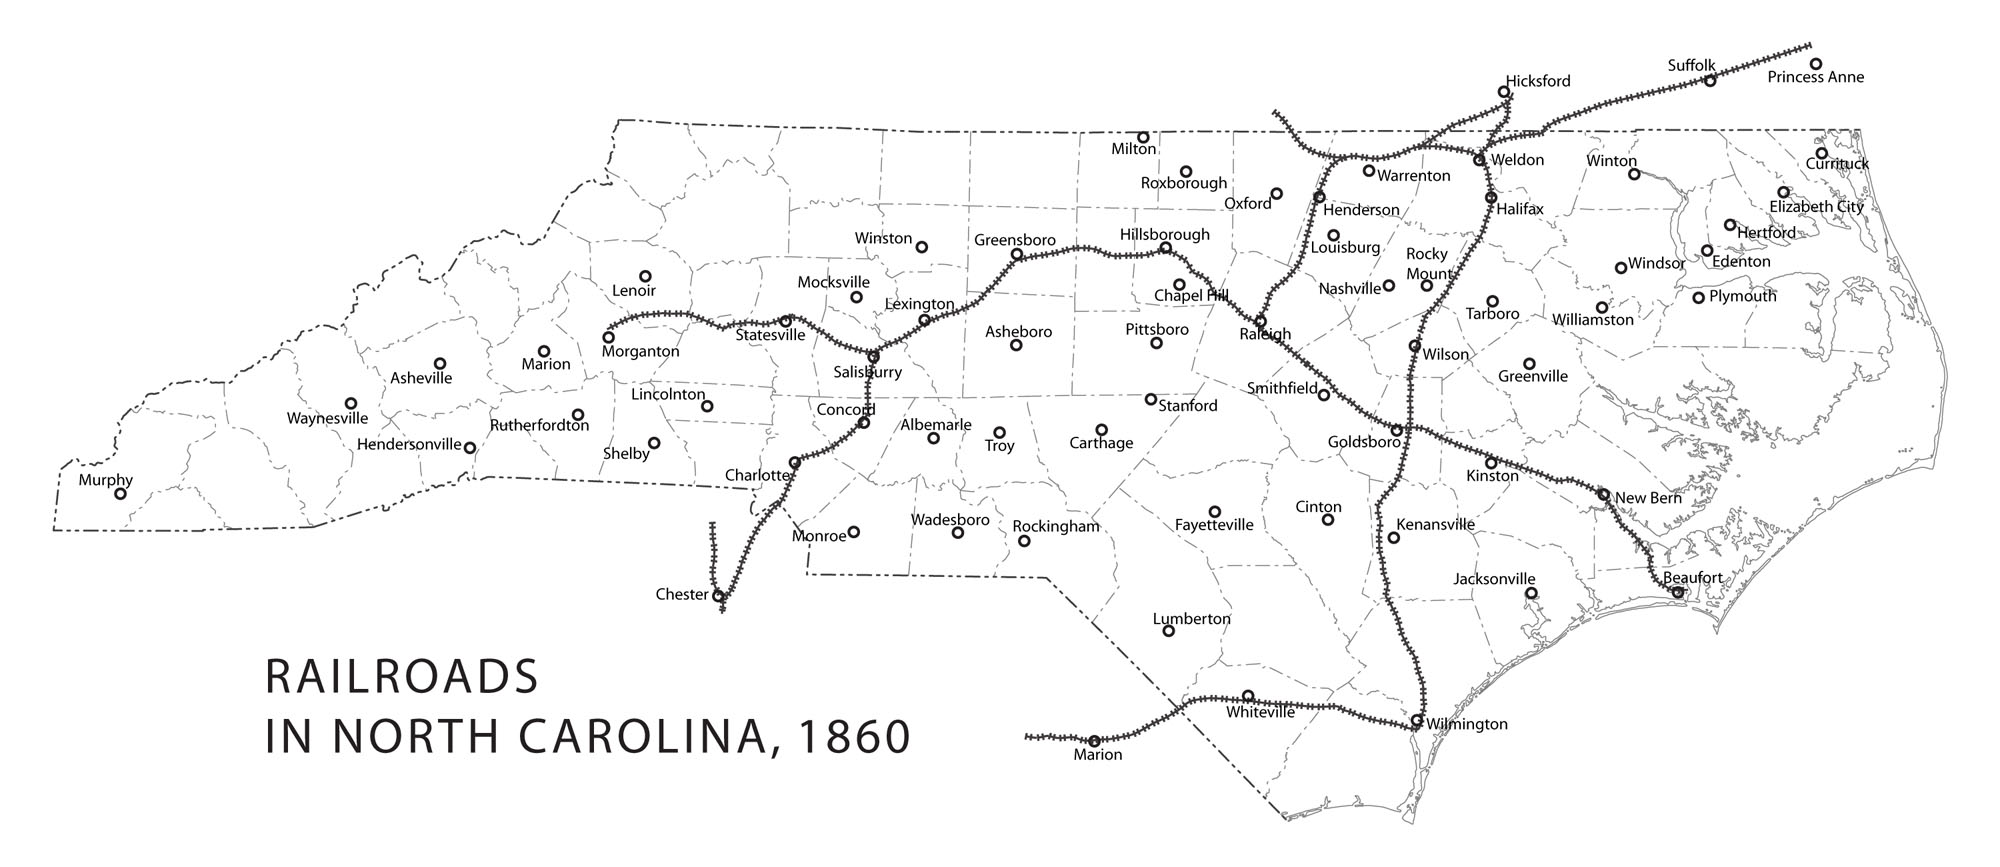 Map of Railroads in North Carolina in 1860